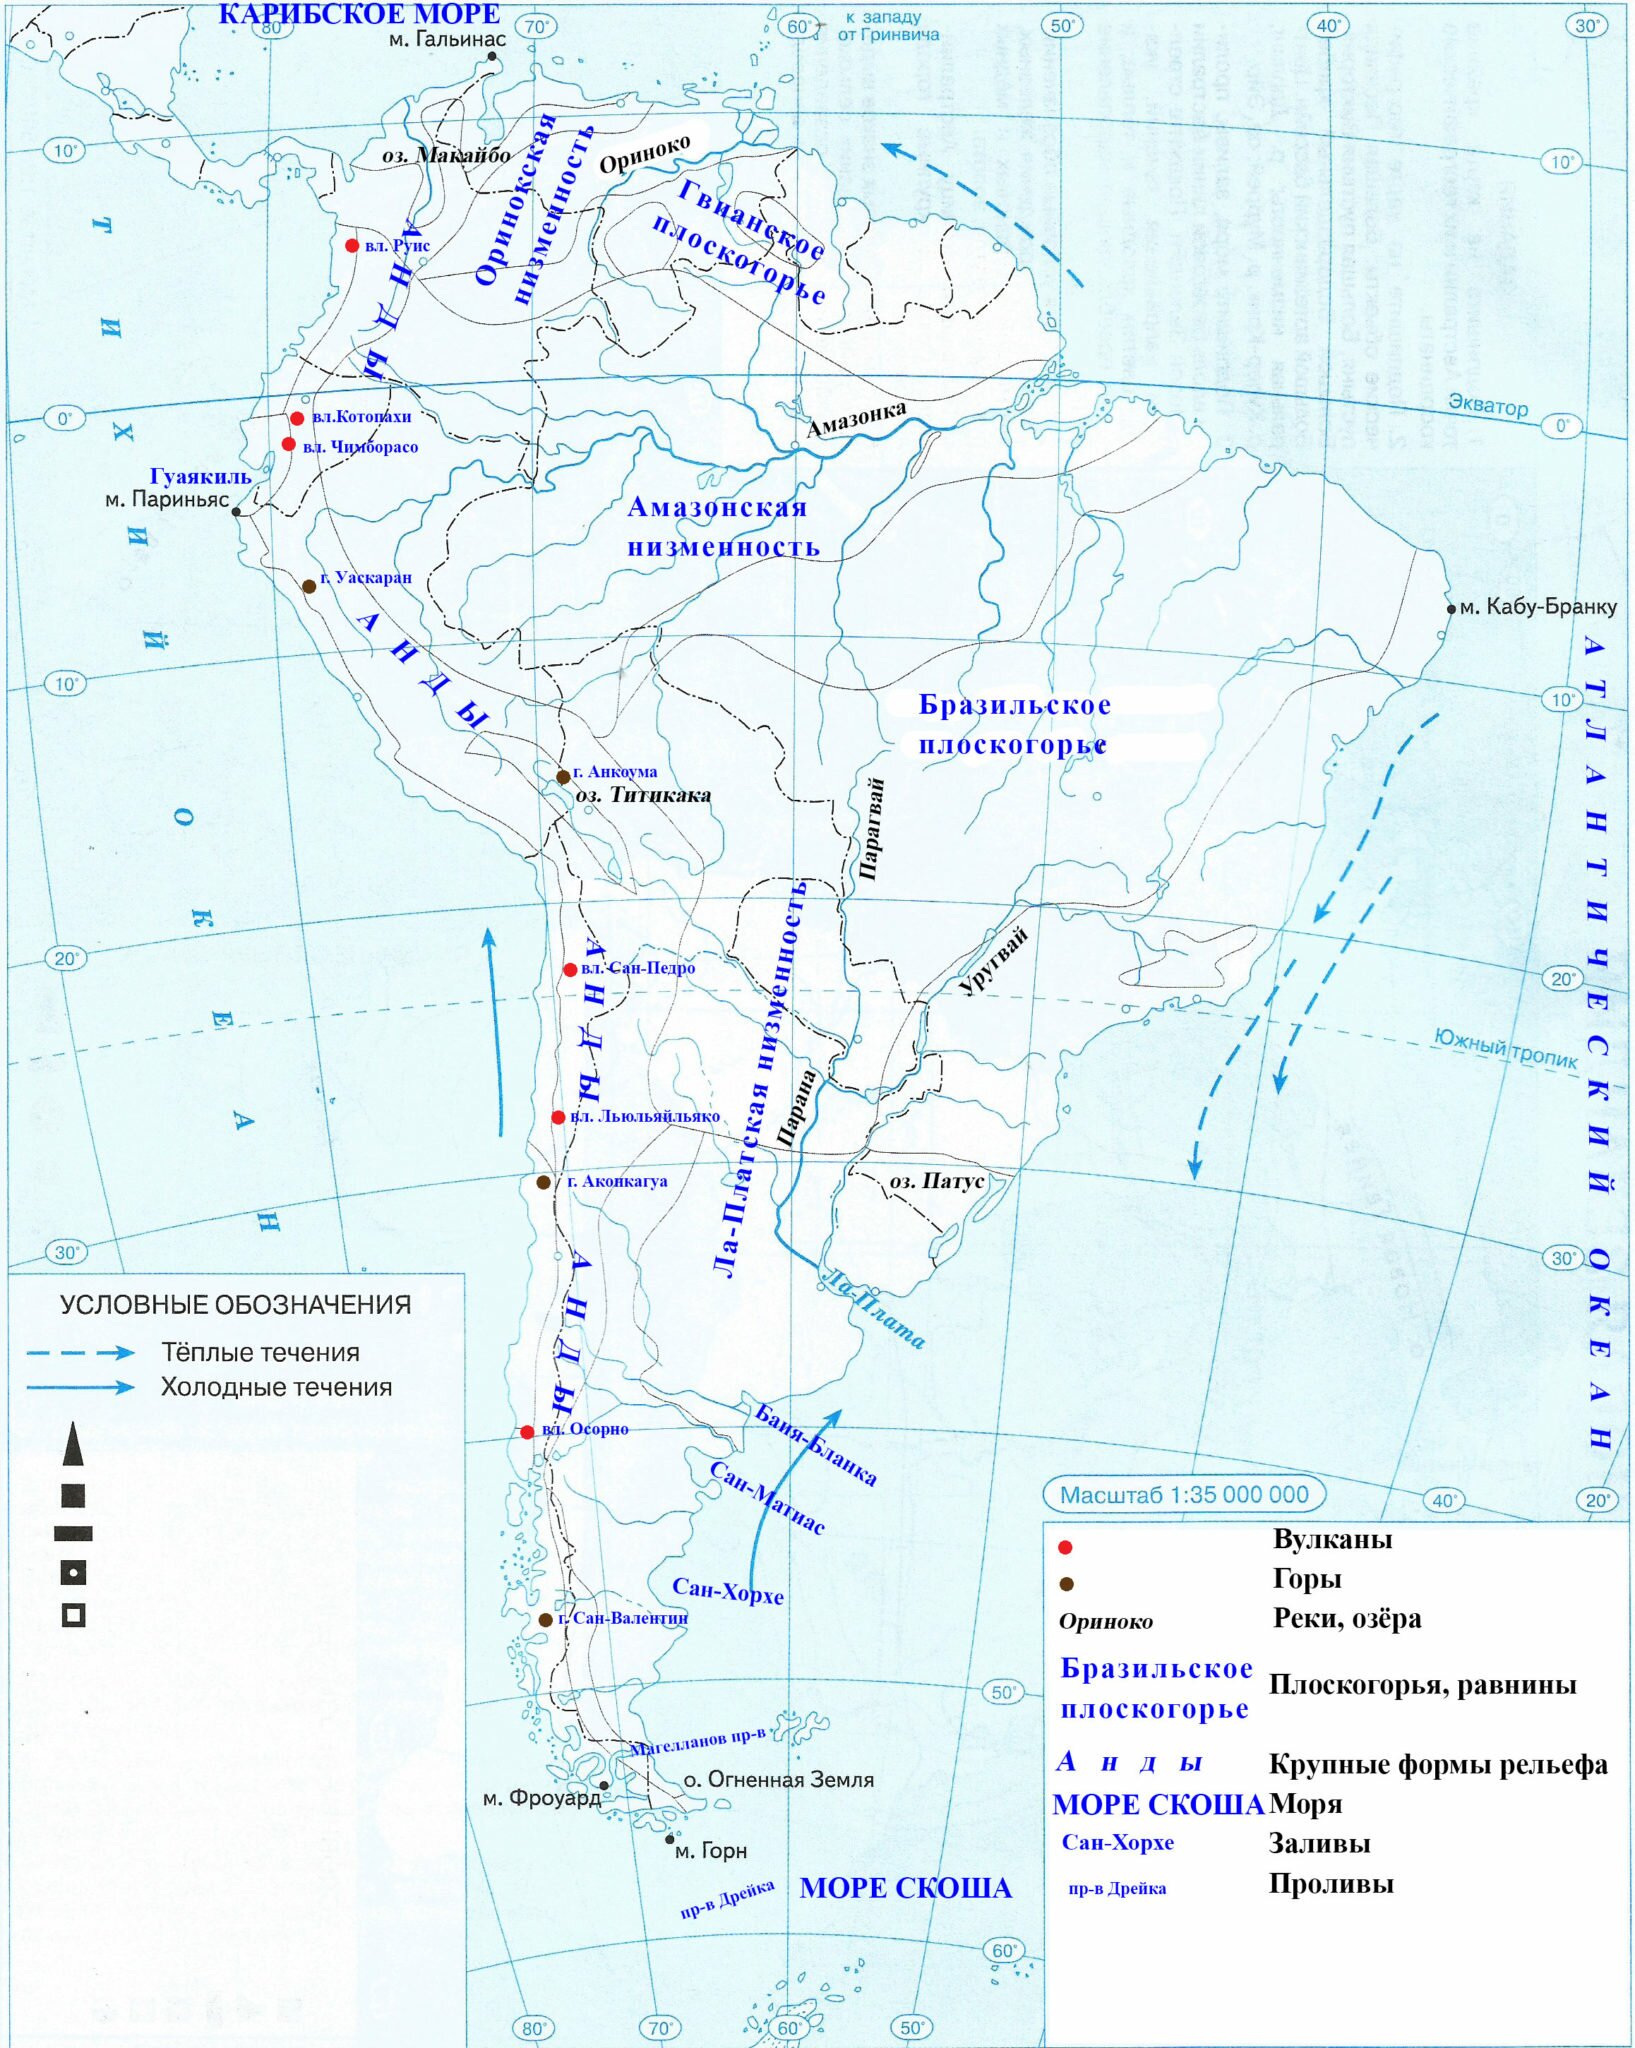 Береговая линия северной америки на карте контурной